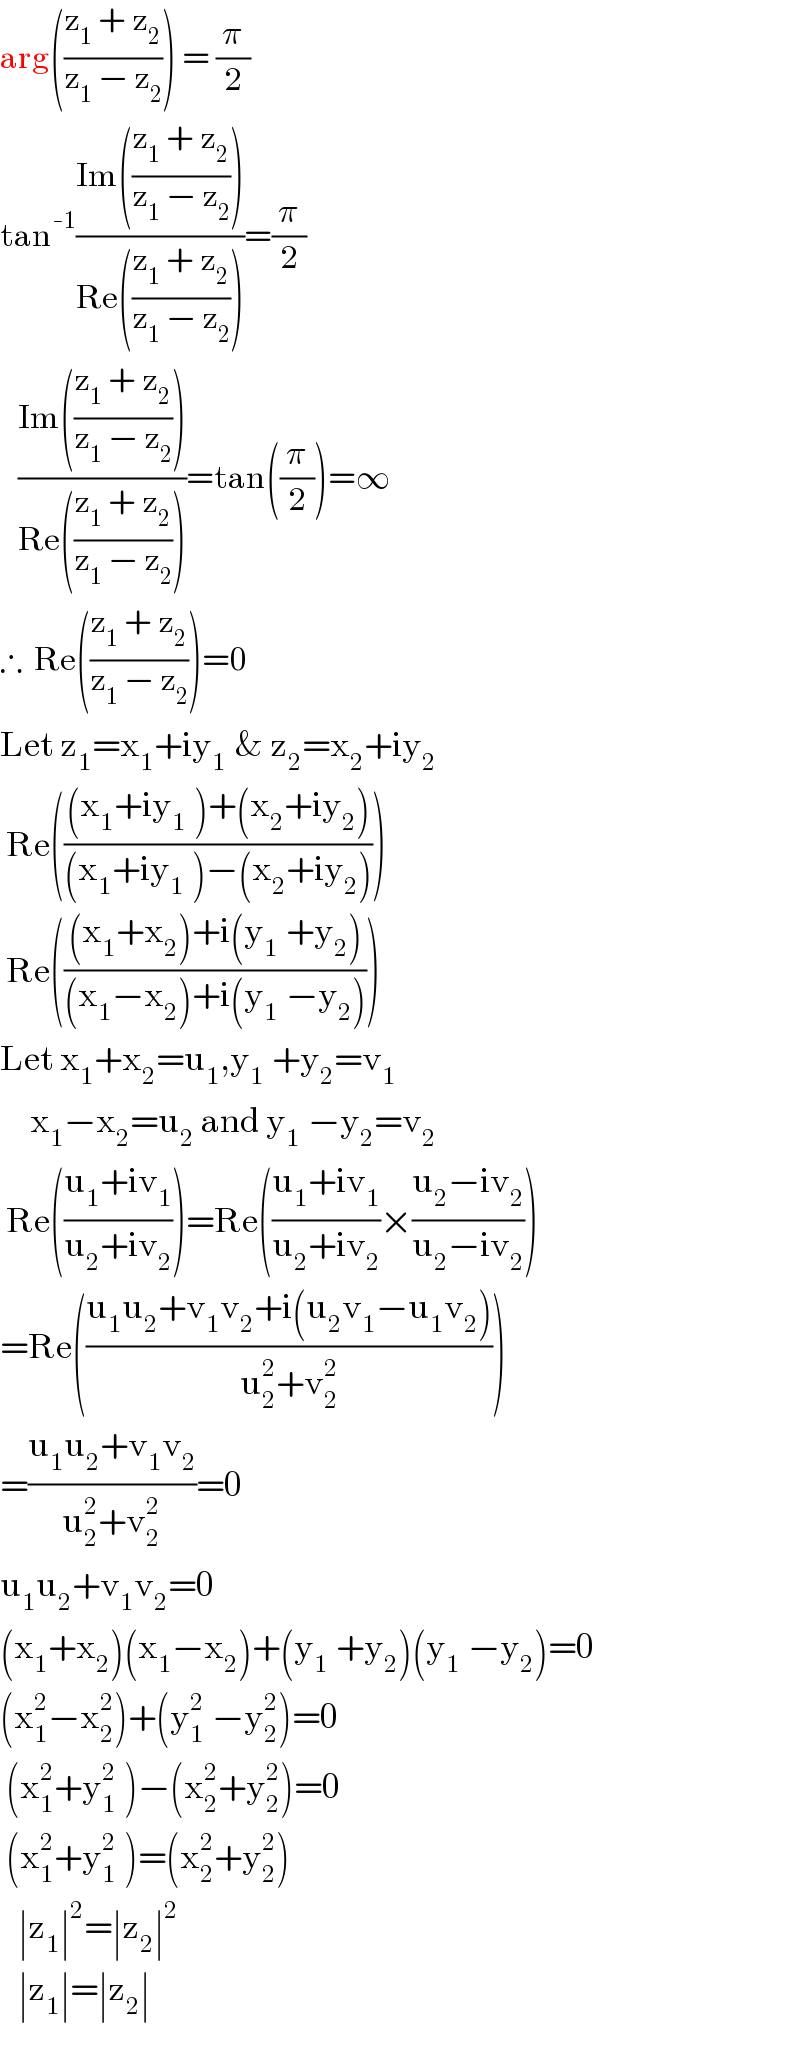 arg(((z_1  + z_2 )/(z_1  − z_2 ))) = (π/2)  tan^(-1) ((Im(((z_1  + z_2 )/(z_1  − z_2 ))))/(Re(((z_1  + z_2 )/(z_1  − z_2 )))))=(π/2)     ((Im(((z_1  + z_2 )/(z_1  − z_2 ))))/(Re(((z_1  + z_2 )/(z_1  − z_2 )))))=tan((π/2))=∞  ∴  Re(((z_1  + z_2 )/(z_1  − z_2 )))=0  Let z_1 =x_1 +iy_(1  ) & z_2 =x_2 +iy_2    Re((((x_1 +iy_(1  ) )+(x_2 +iy_2 ))/((x_1 +iy_(1  ) )−(x_2 +iy_2 ))))   Re((((x_1 +x_2 )+i(y_(1  ) +y_2 ))/((x_1 −x_2 )+i(y_(1  ) −y_2 ))))  Let x_1 +x_2 =u_1 ,y_(1  ) +y_2 =v_1        x_1 −x_2 =u_2  and y_(1  ) −y_2 =v_2    Re(((u_1 +iv_1 )/(u_2 +iv_2 )))=Re(((u_1 +iv_1 )/(u_2 +iv_2 ))×((u_2 −iv_2 )/(u_2 −iv_2 )))  =Re(((u_1 u_2 +v_1 v_2 +i(u_2 v_1 −u_1 v_2 ))/(u_2 ^2 +v_2 ^2 )))  =((u_1 u_2 +v_1 v_2 )/(u_2 ^2 +v_2 ^2 ))=0  u_1 u_2 +v_1 v_2 =0  (x_1 +x_2 )(x_1 −x_2 )+(y_(1  ) +y_2 )(y_(1  ) −y_2 )=0  (x_1 ^2 −x_2 ^2 )+(y_(1  ) ^2 −y_2 ^2 )=0   (x_1 ^2 +y_(1  ) ^2 )−(x_2 ^2 +y_2 ^2 )=0   (x_1 ^2 +y_(1  ) ^2 )=(x_2 ^2 +y_2 ^2 )     ∣z_1 ∣^2 =∣z_2 ∣^2      ∣z_1 ∣=∣z_2 ∣  